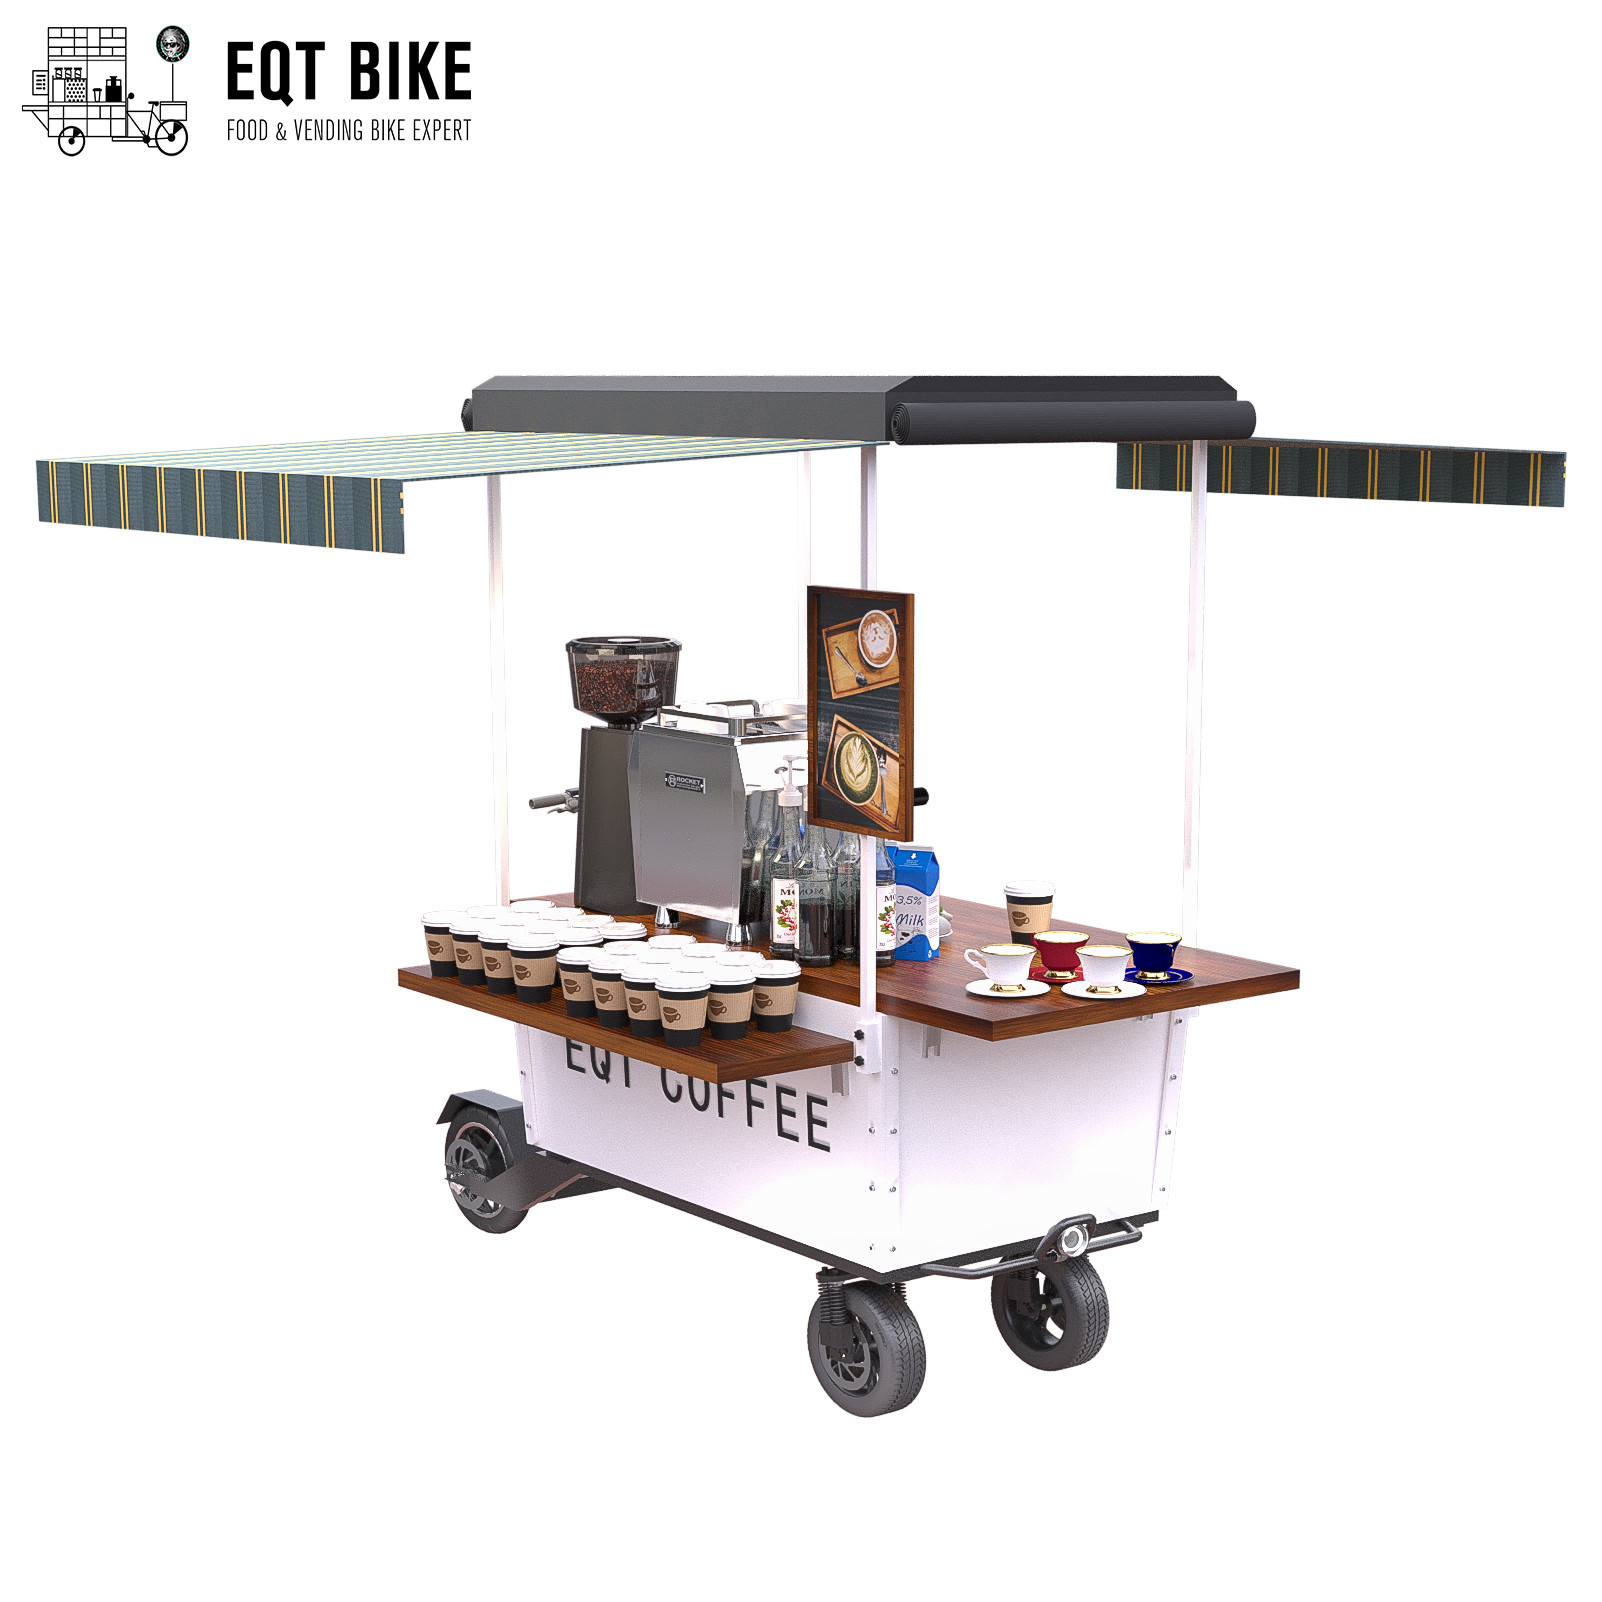 4 عجلات البيع في الهواء الطلق عربة القهوة مسحوق الطلاء دراجة القهوة المتنقلة